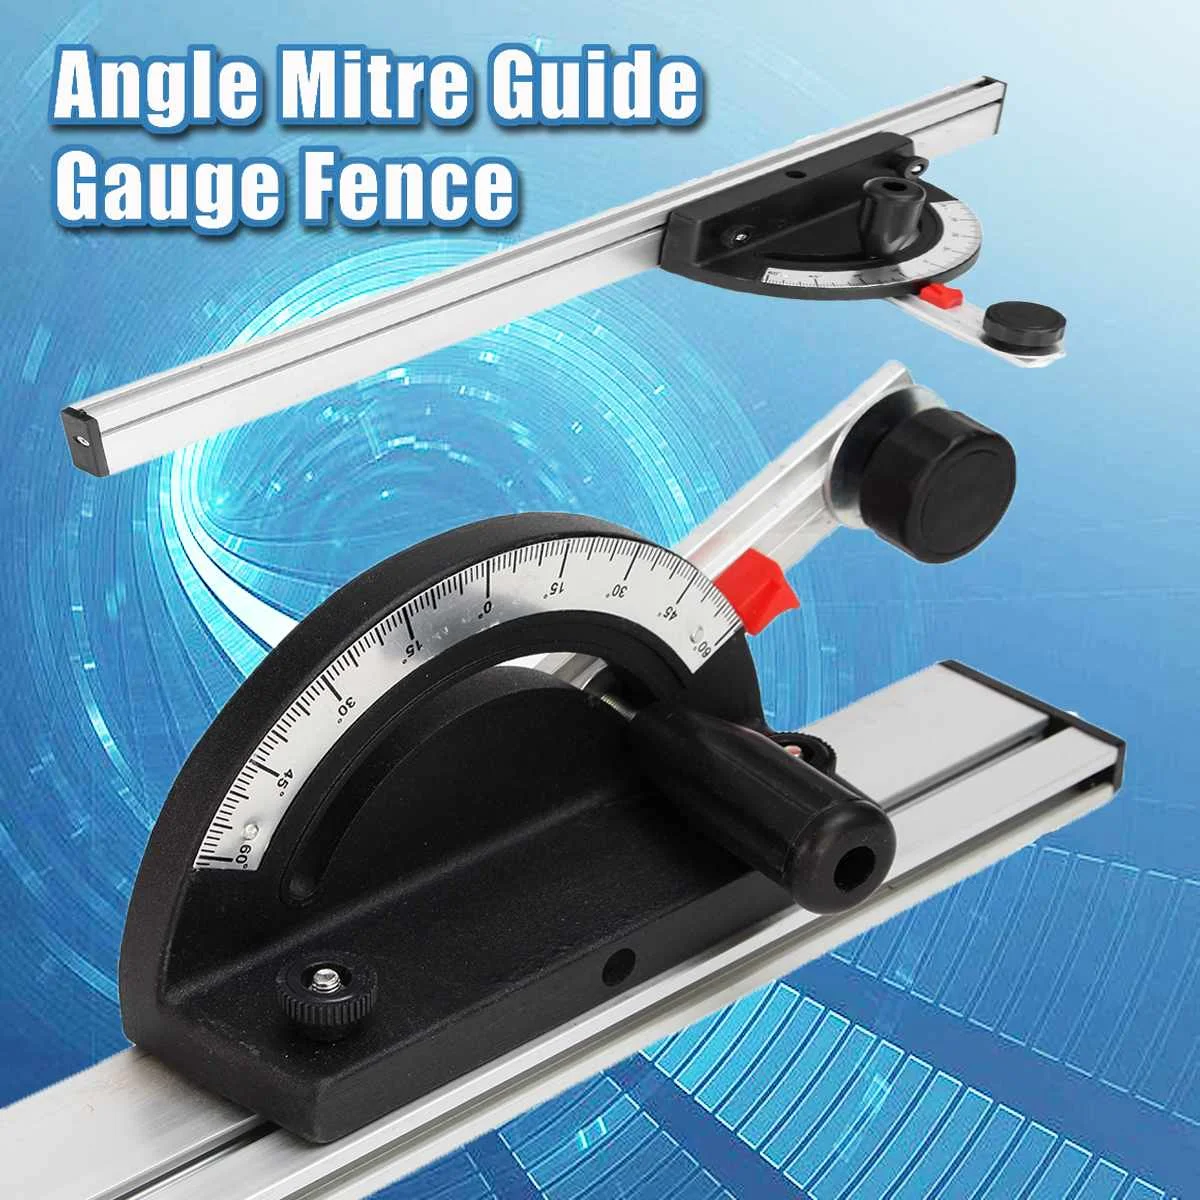 60 см точный деревообрабатывающий угловой транспортир Mitre Guide Gauge забор стол пила маршрутизатор угол линейка измерительный инструмент